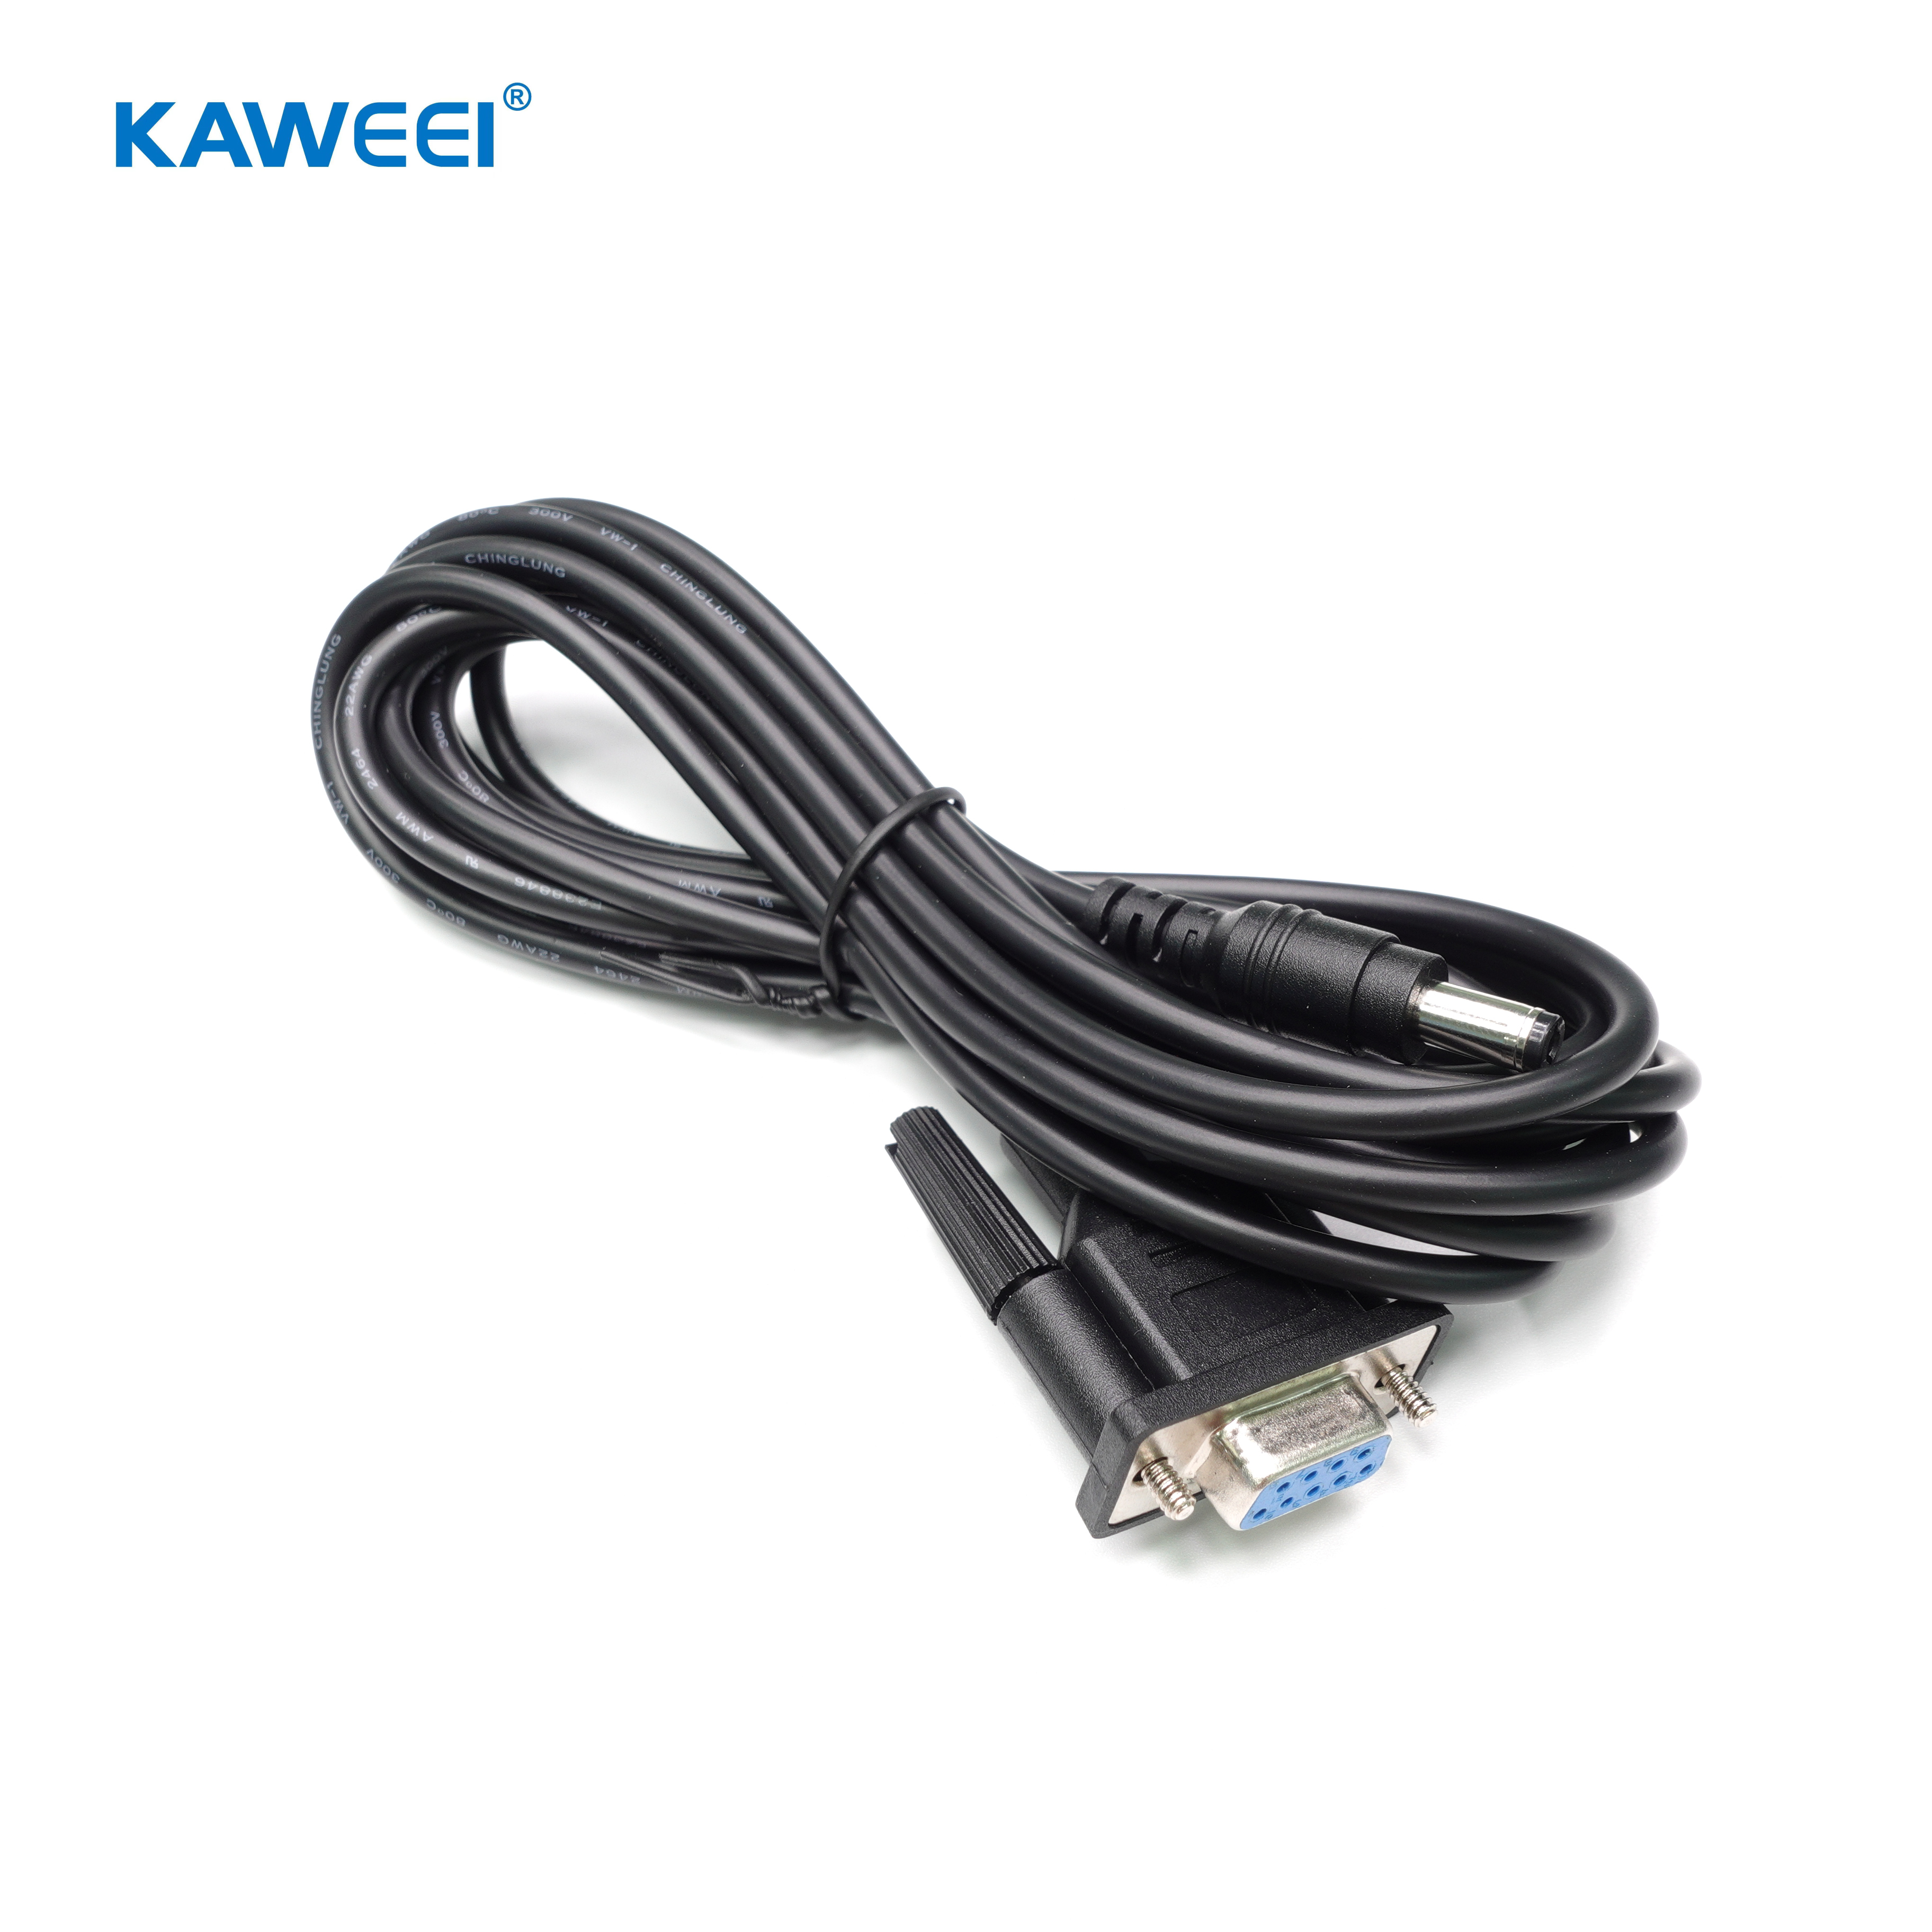 2,1 mm x 5,5 mm vīrišķā un sievišķā veidņu vadu instalācija 12 V līdzstrāvas barošanas kabeļa d-sub kabelis (1)